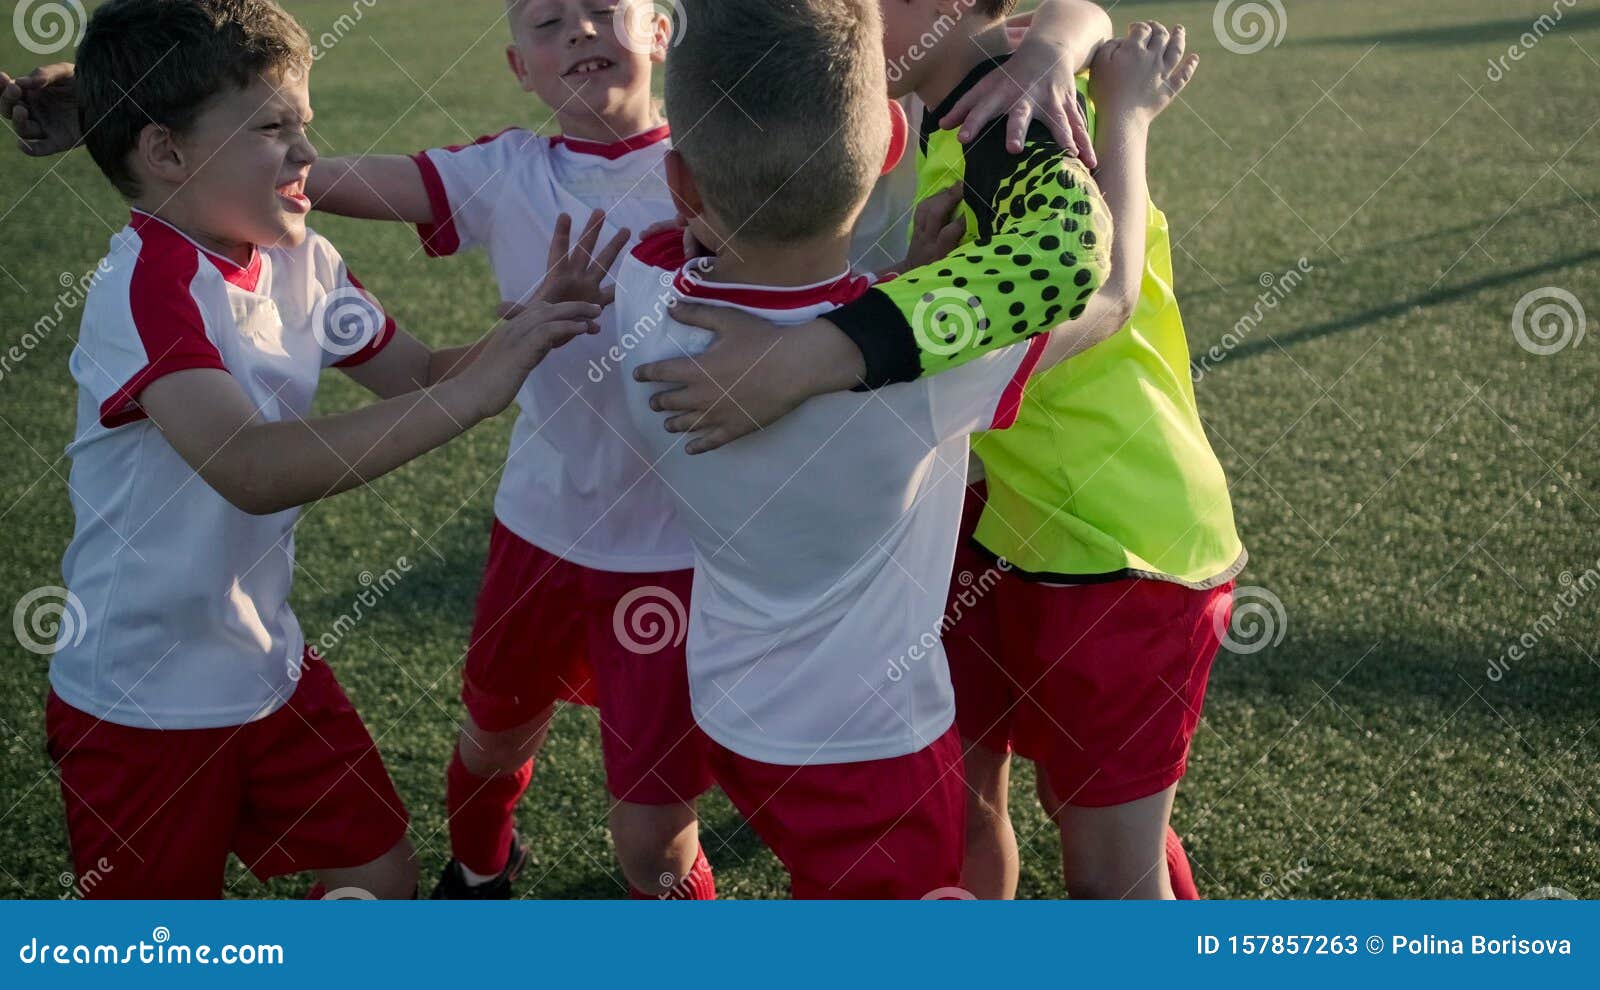 Equipe De Futebol Infantil Se Abraça No Campo De Futebol Antes Do